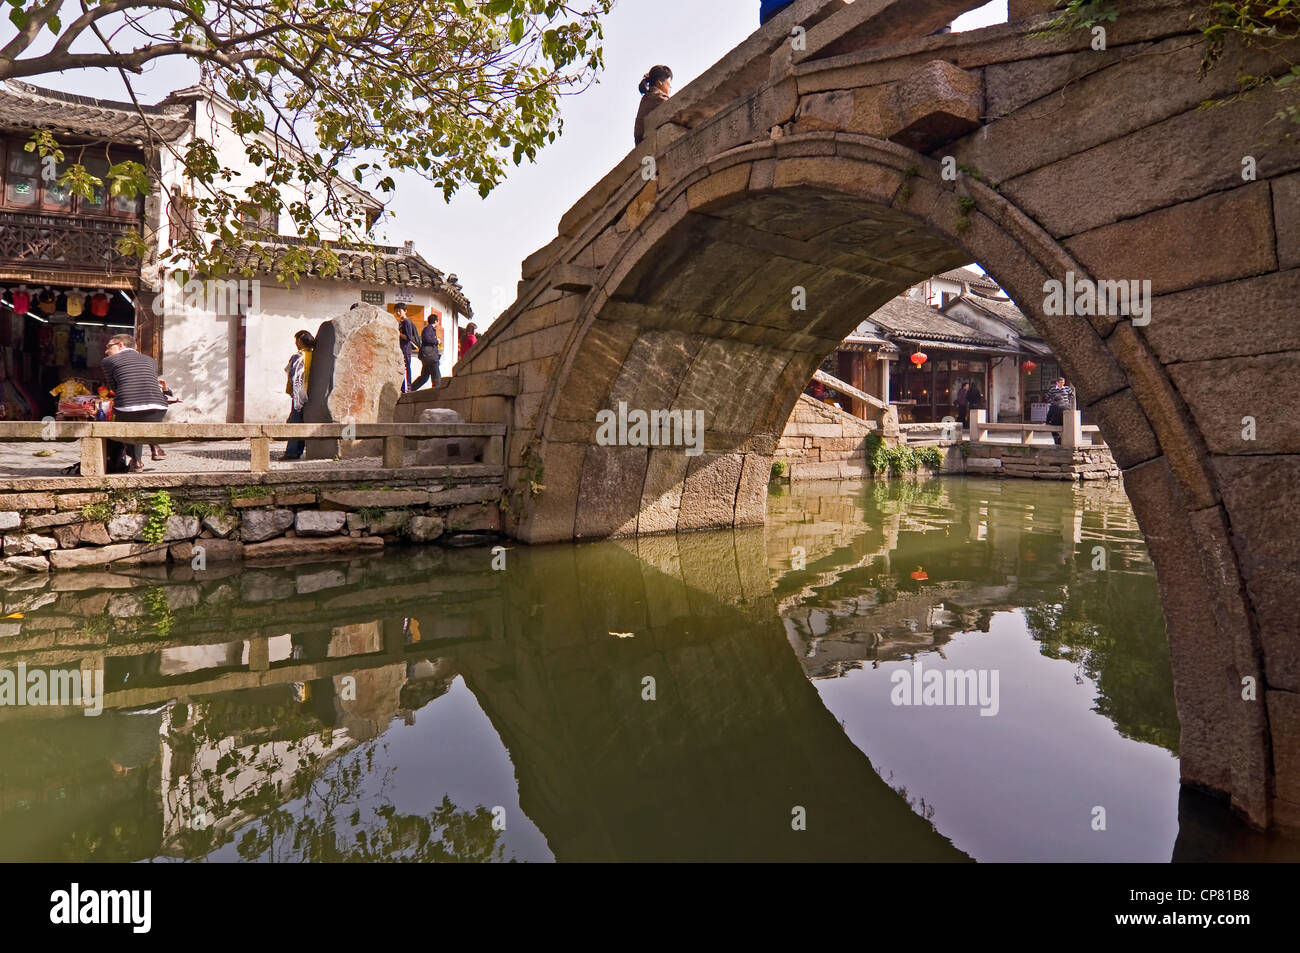 Stone gerundet chinesische Brücke auf einem Kanal in Zhouzhuang Watertown in der Nähe von Shanghai - China Stockfoto